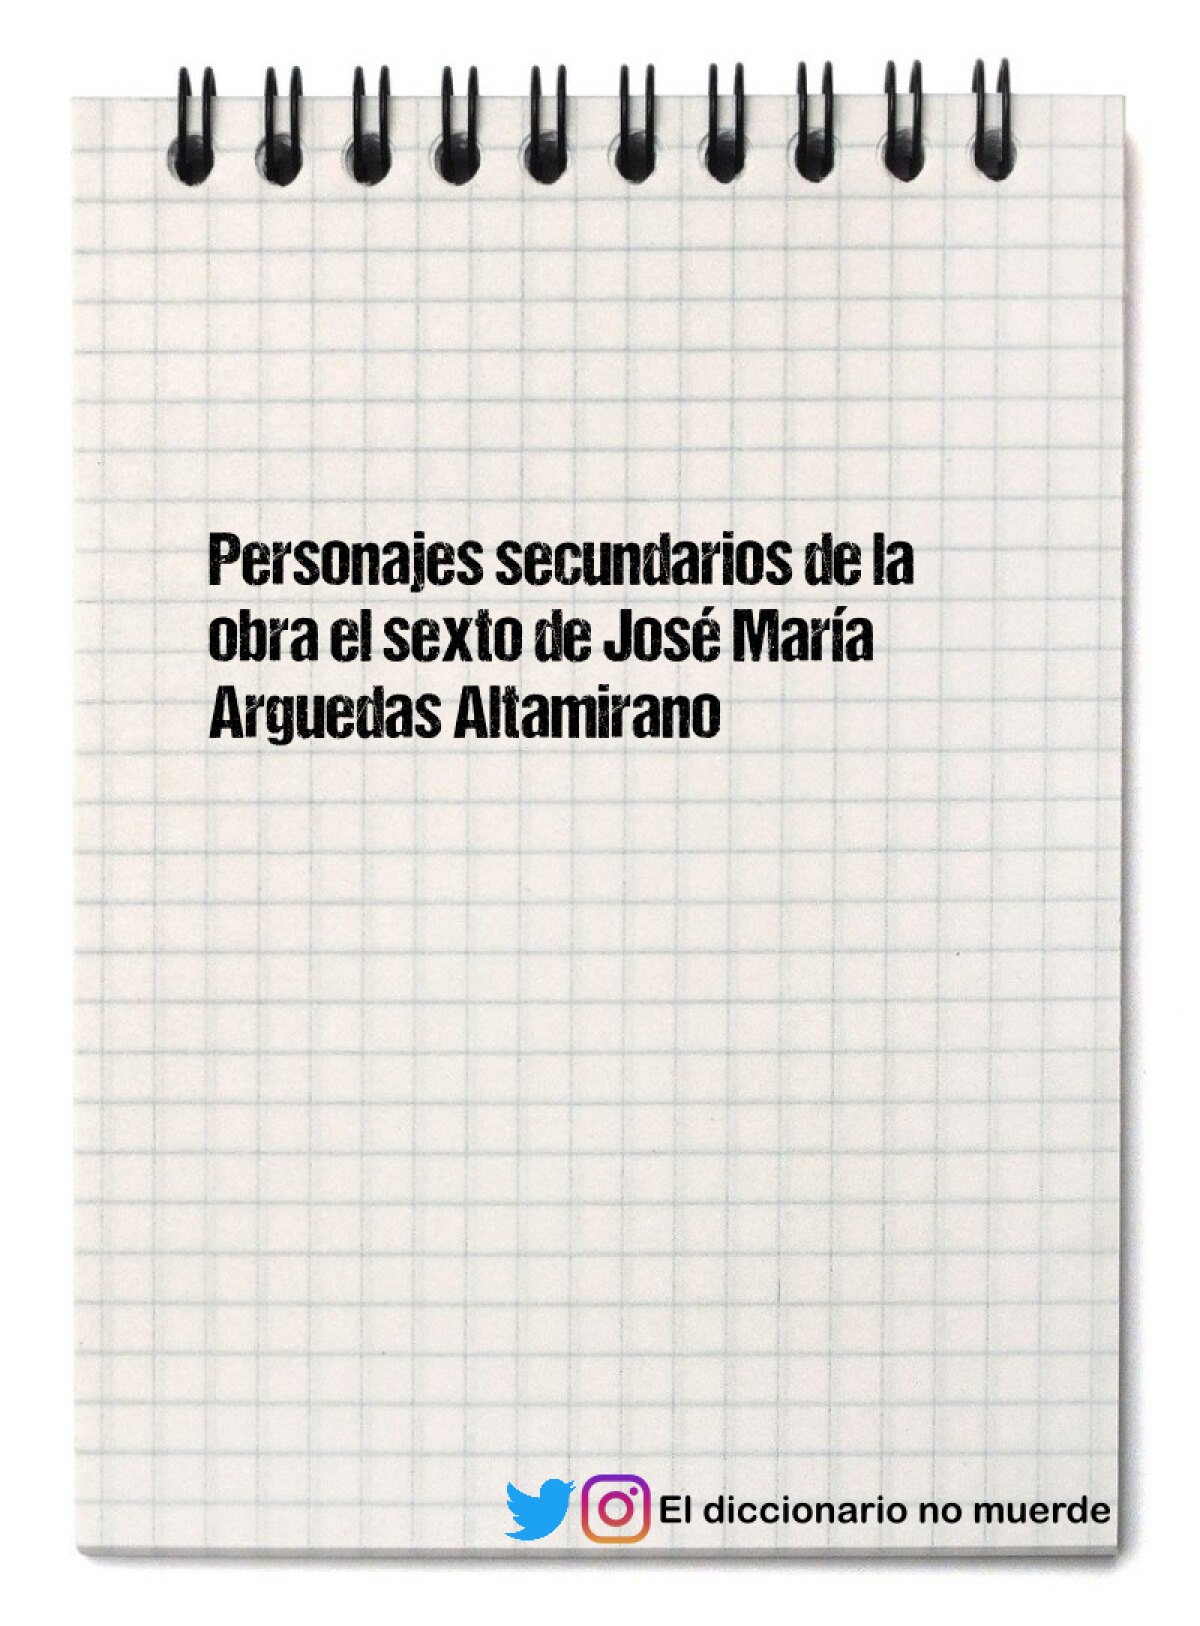 Personajes secundarios de la obra el sexto de José María Arguedas Altamirano